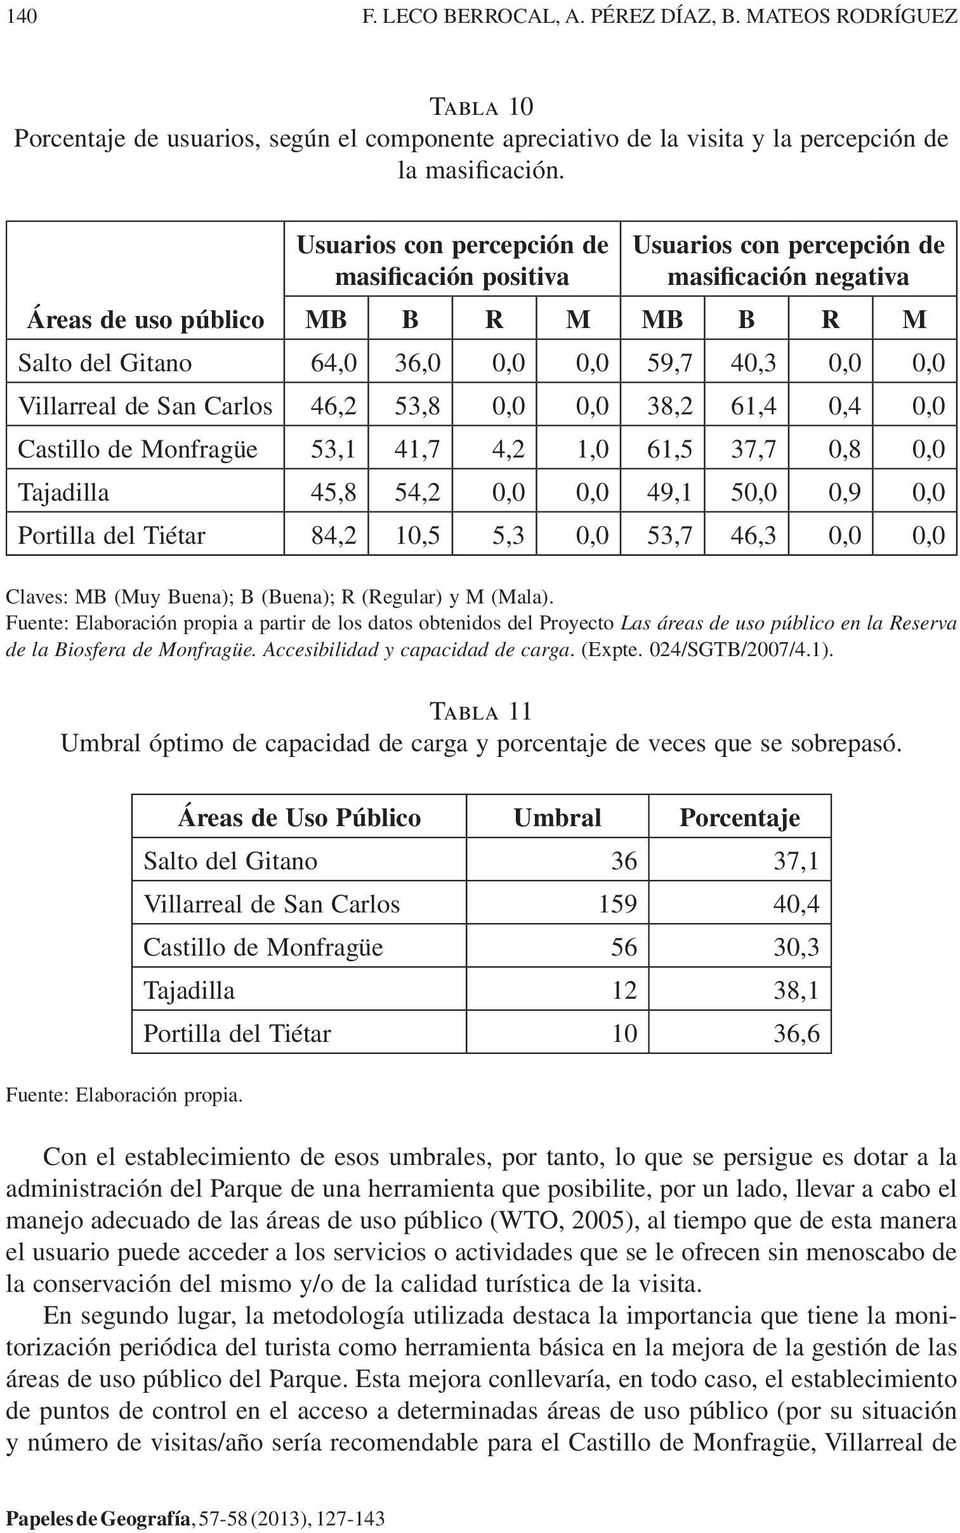 Villarreal de San Carlos 46,2 53,8 0,0 0,0 38,2 61,4 0,4 0,0 Castillo de Monfragüe 53,1 41,7 4,2 1,0 61,5 37,7 0,8 0,0 Tajadilla 45,8 54,2 0,0 0,0 49,1 50,0 0,9 0,0 Portilla del Tiétar 84,2 10,5 5,3